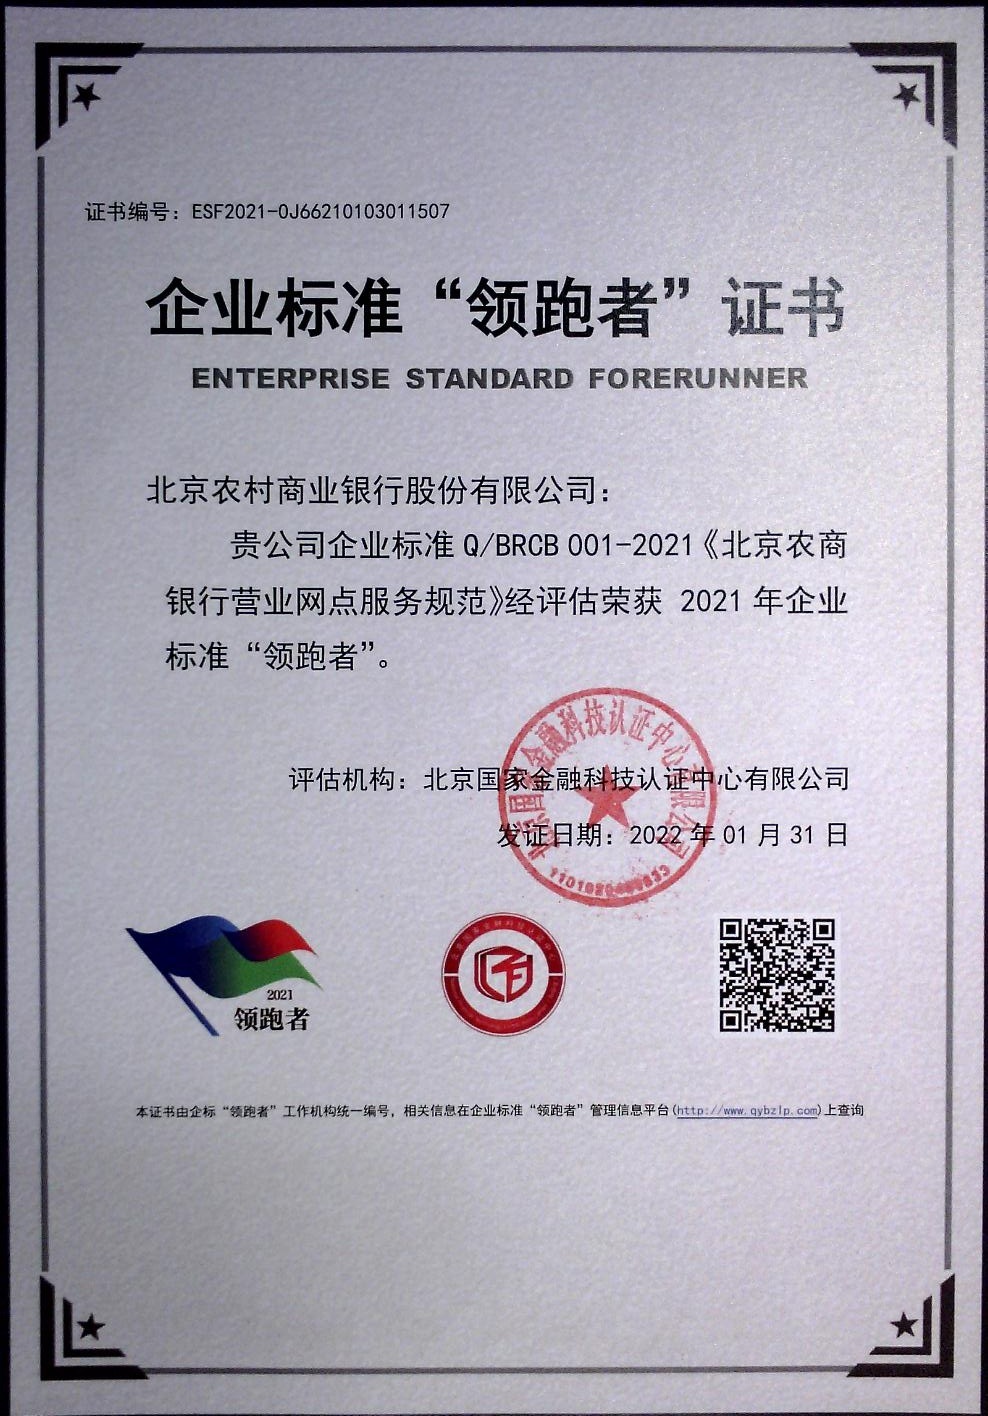 北京農商銀行連續三年入圍企業標準“領跑者”榜單